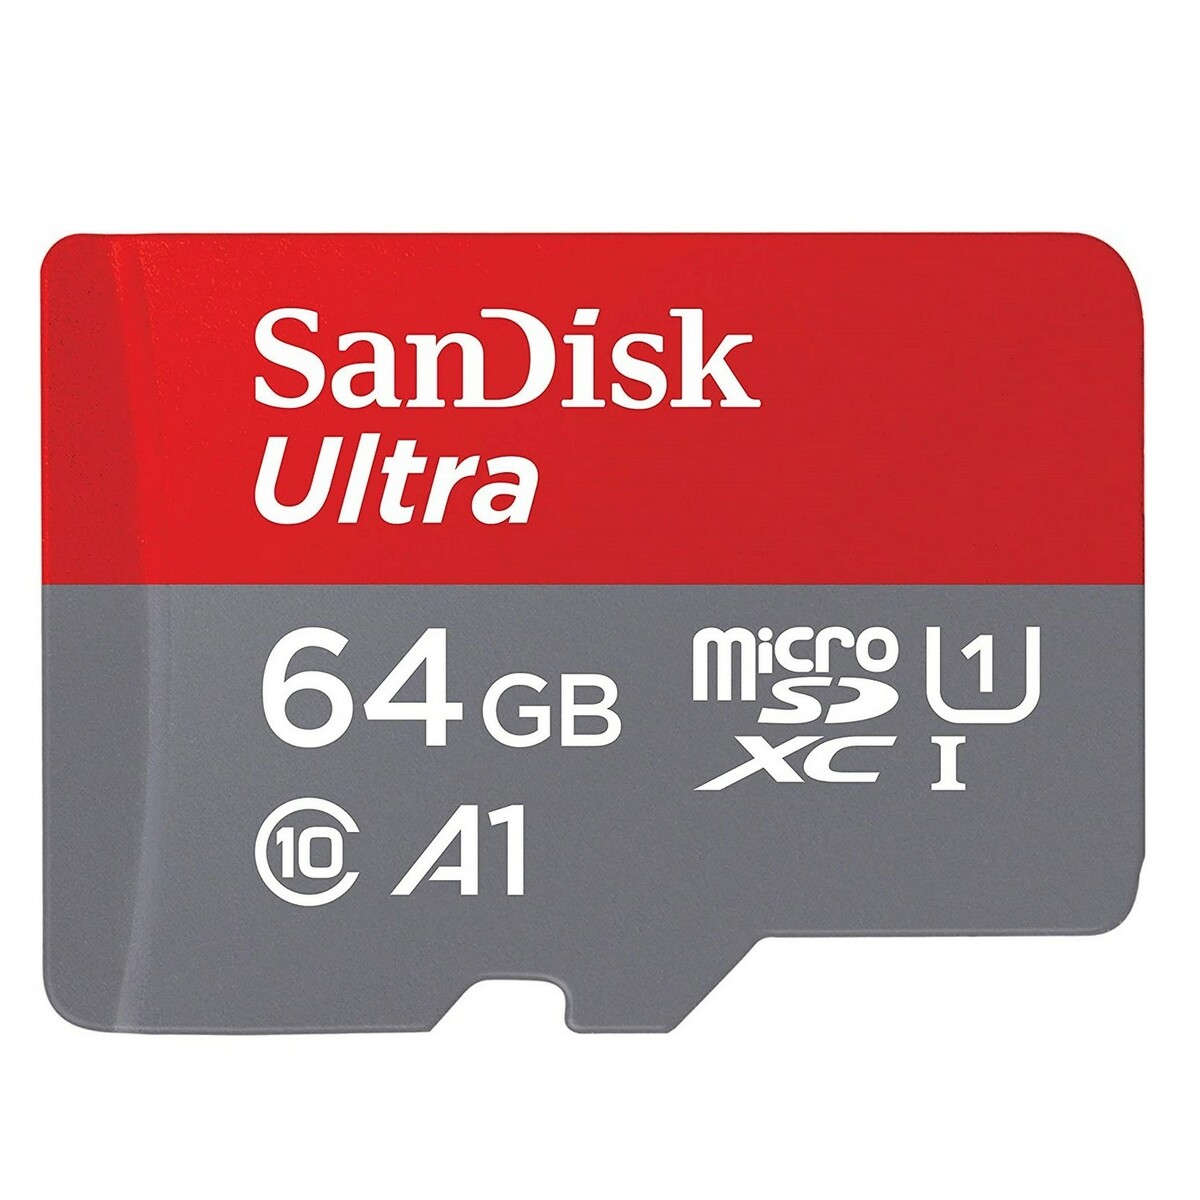 Sandisk Micro SD Card SDSQUA4 64GB